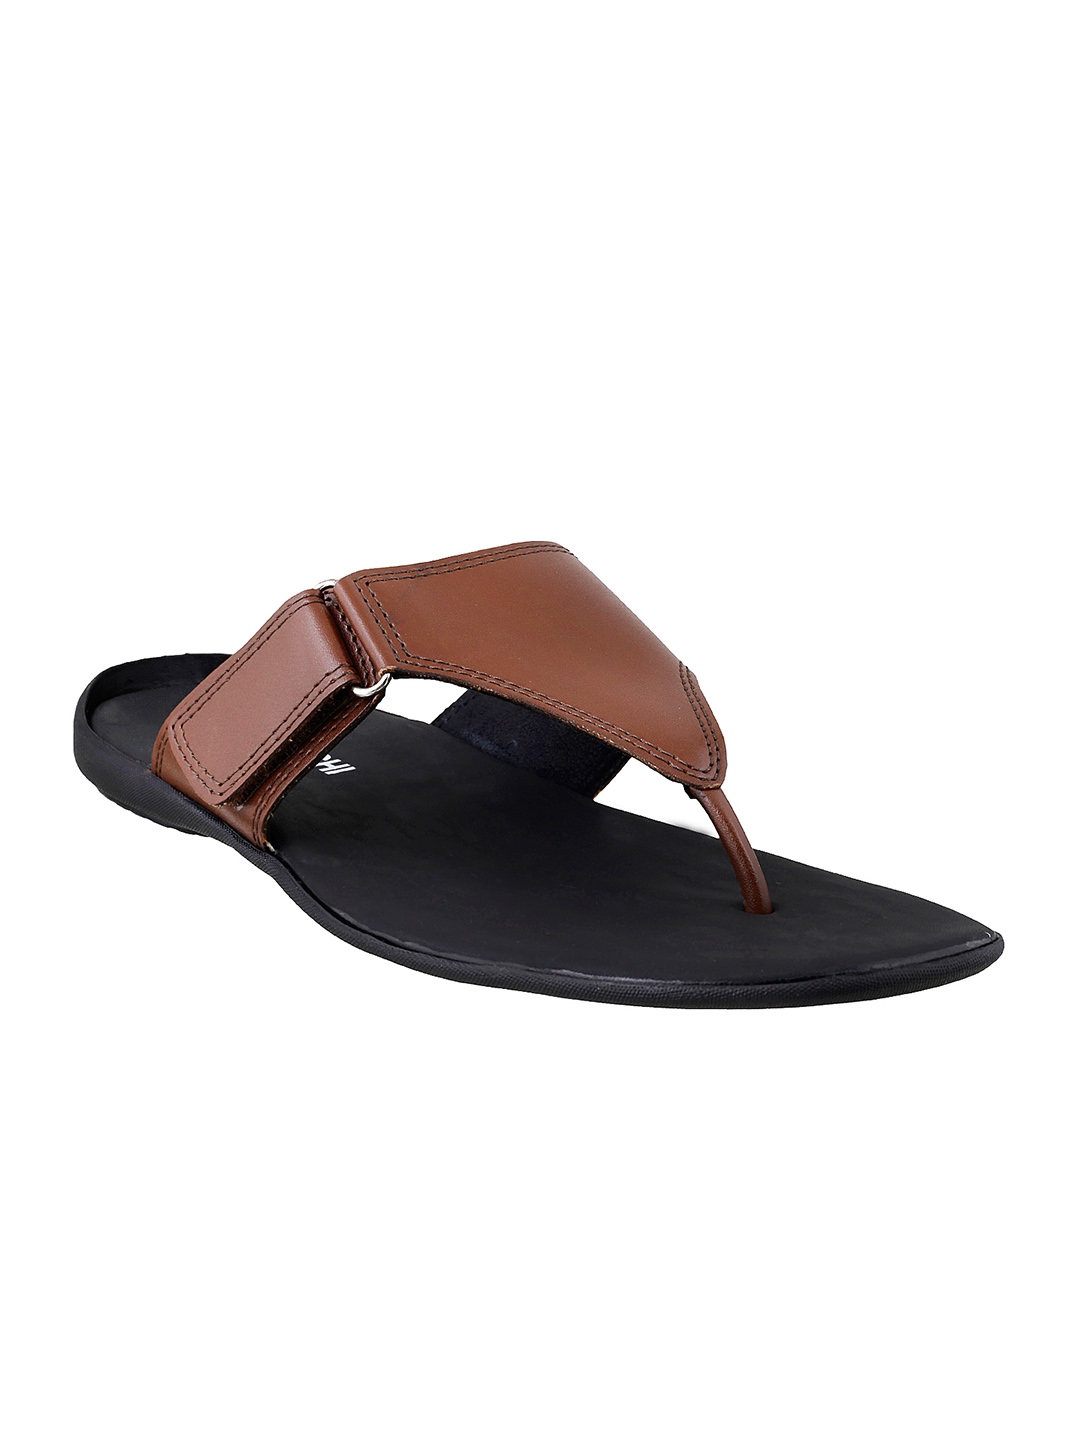 Buy Mochi Men Brown Leather Sandals - Sandals for Men 1909216 | Myntra